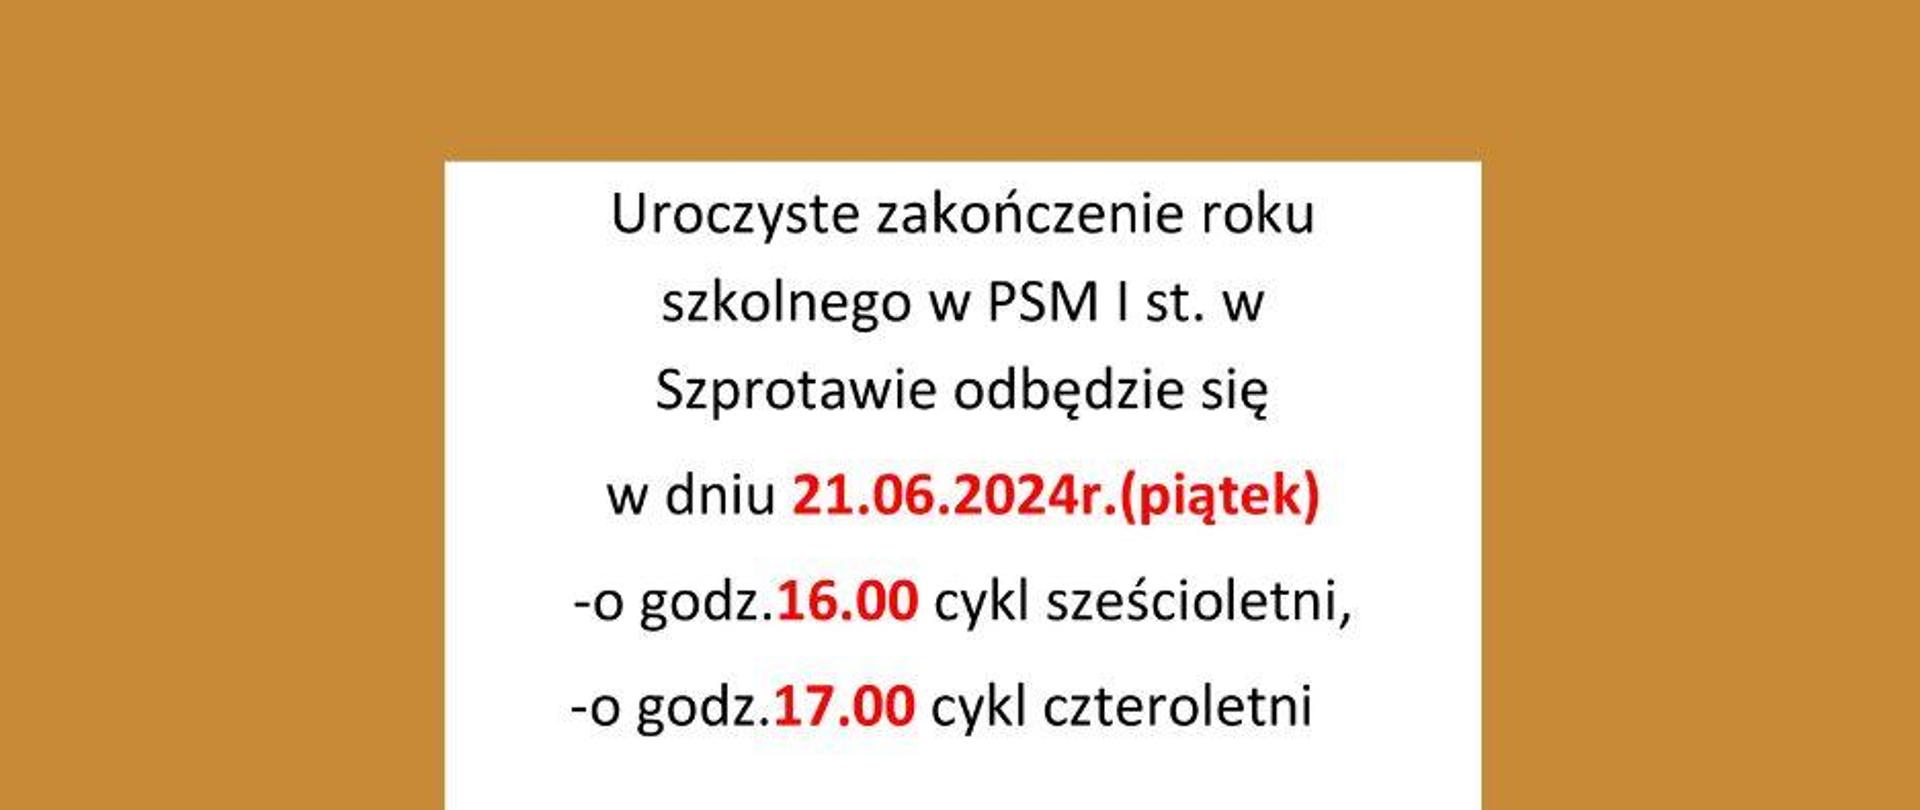 Uroczyste zakończenie roku szkolnego w PSM I st. w Szprotawie odbędzie się 21.06.2024 (piątek), godzina 16.00 cykl sześcioletni, godzina 17.00 cykl czteroletni.